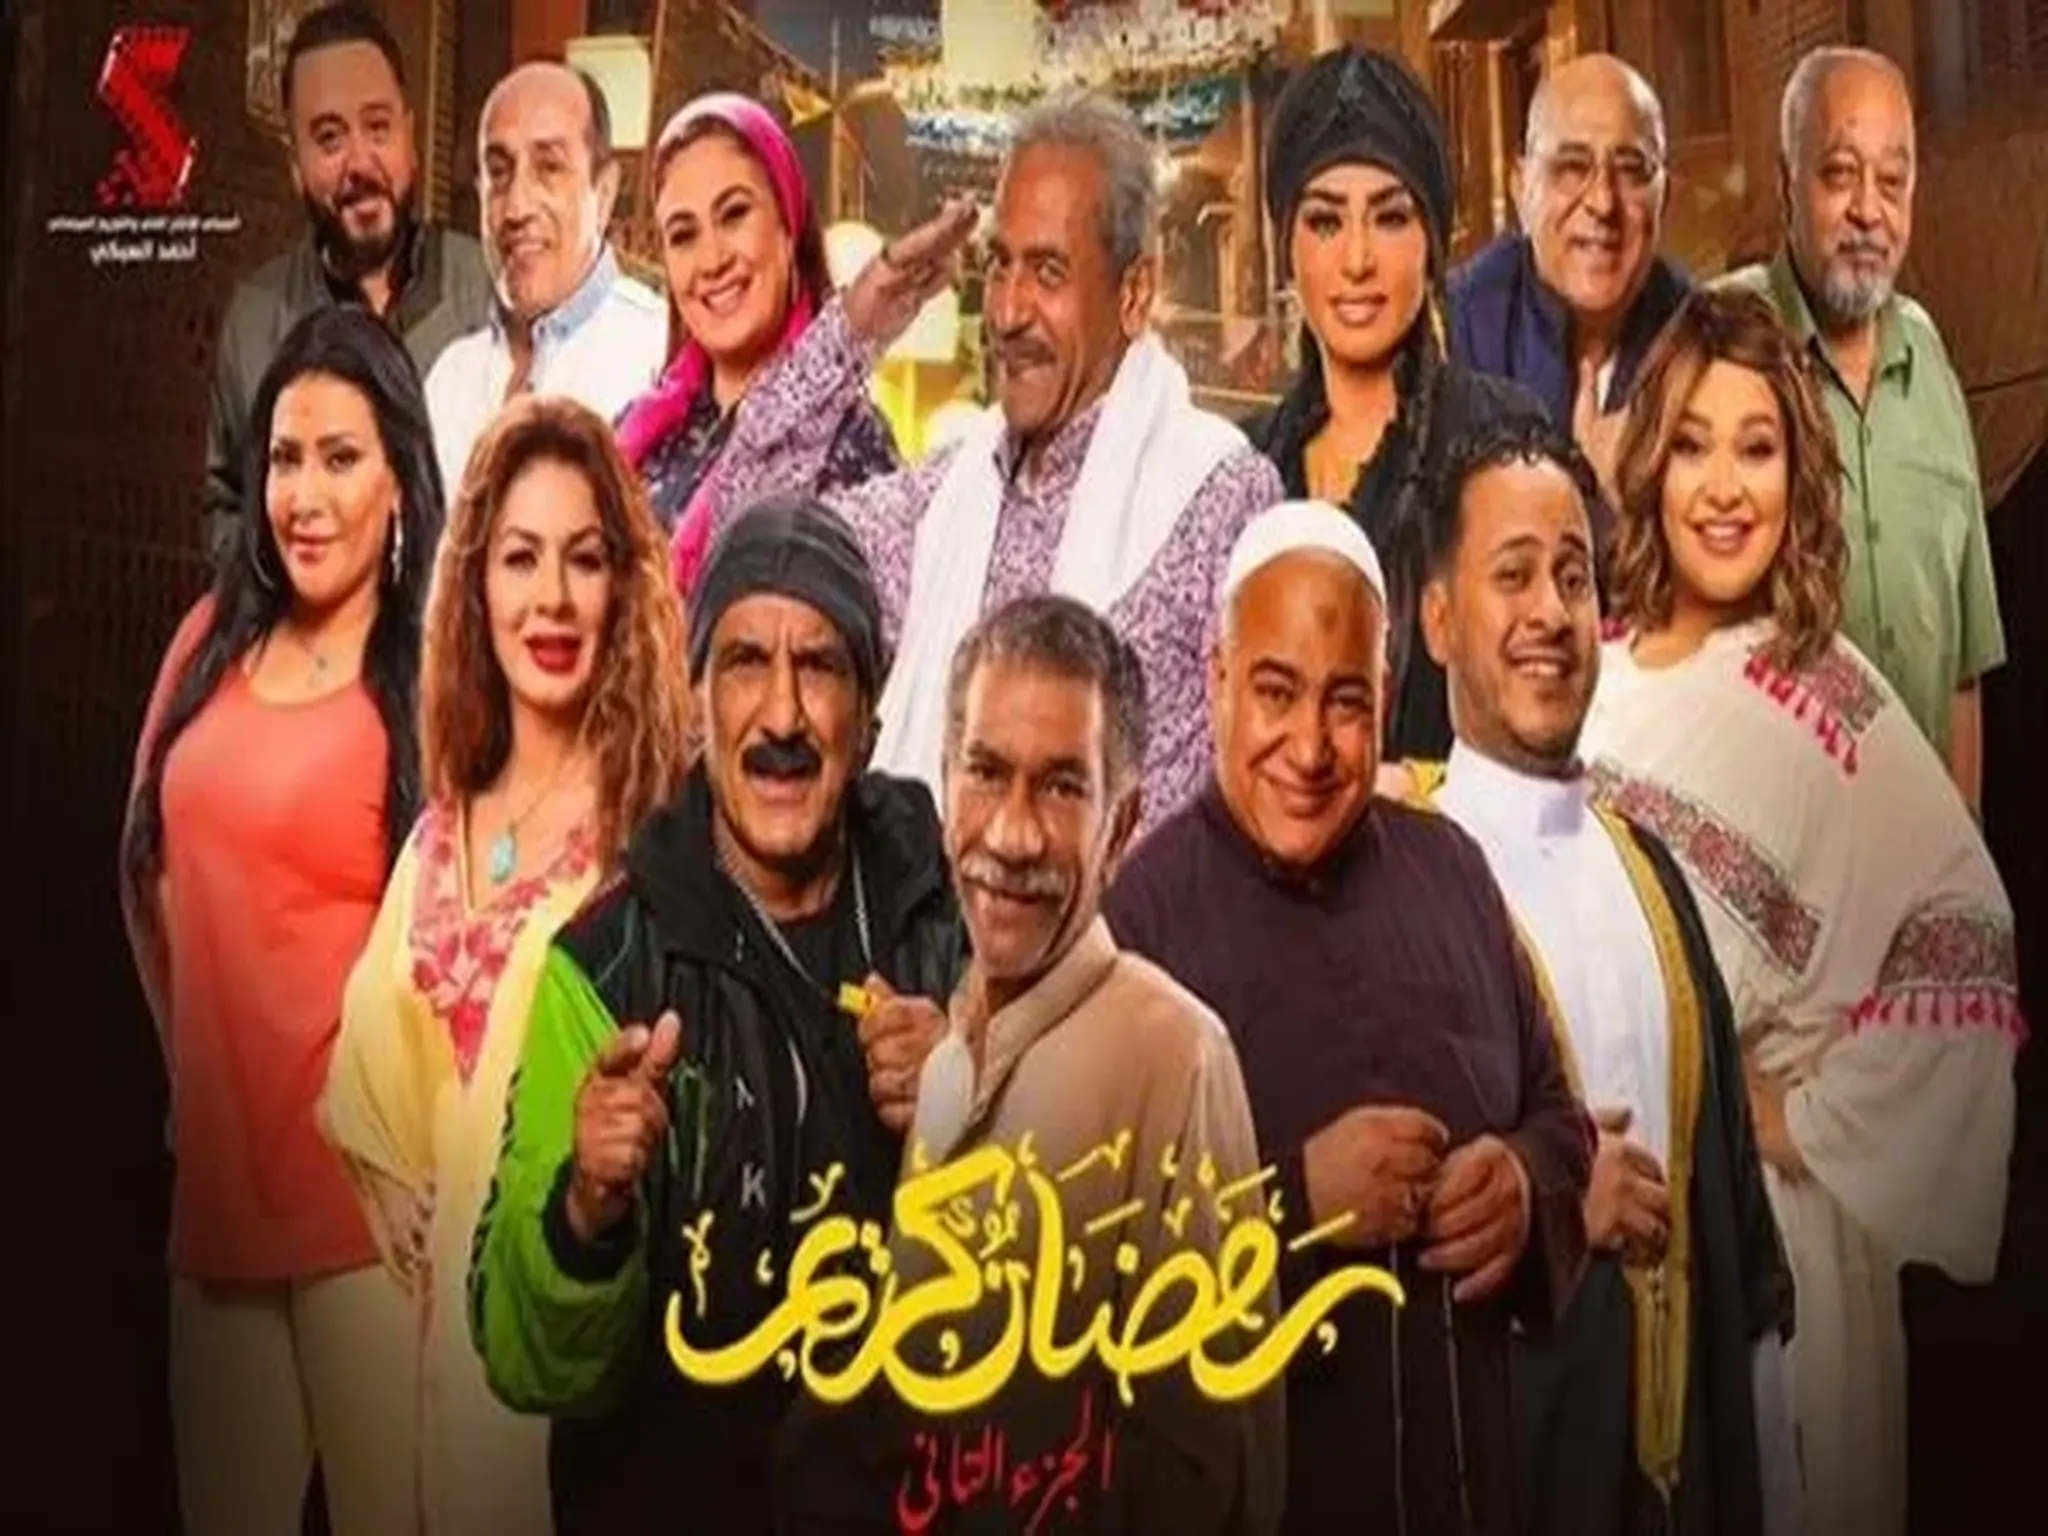 أبطال مسلسل "رمضان كريم" يكشفون تفاصيل الموسم الثاني 